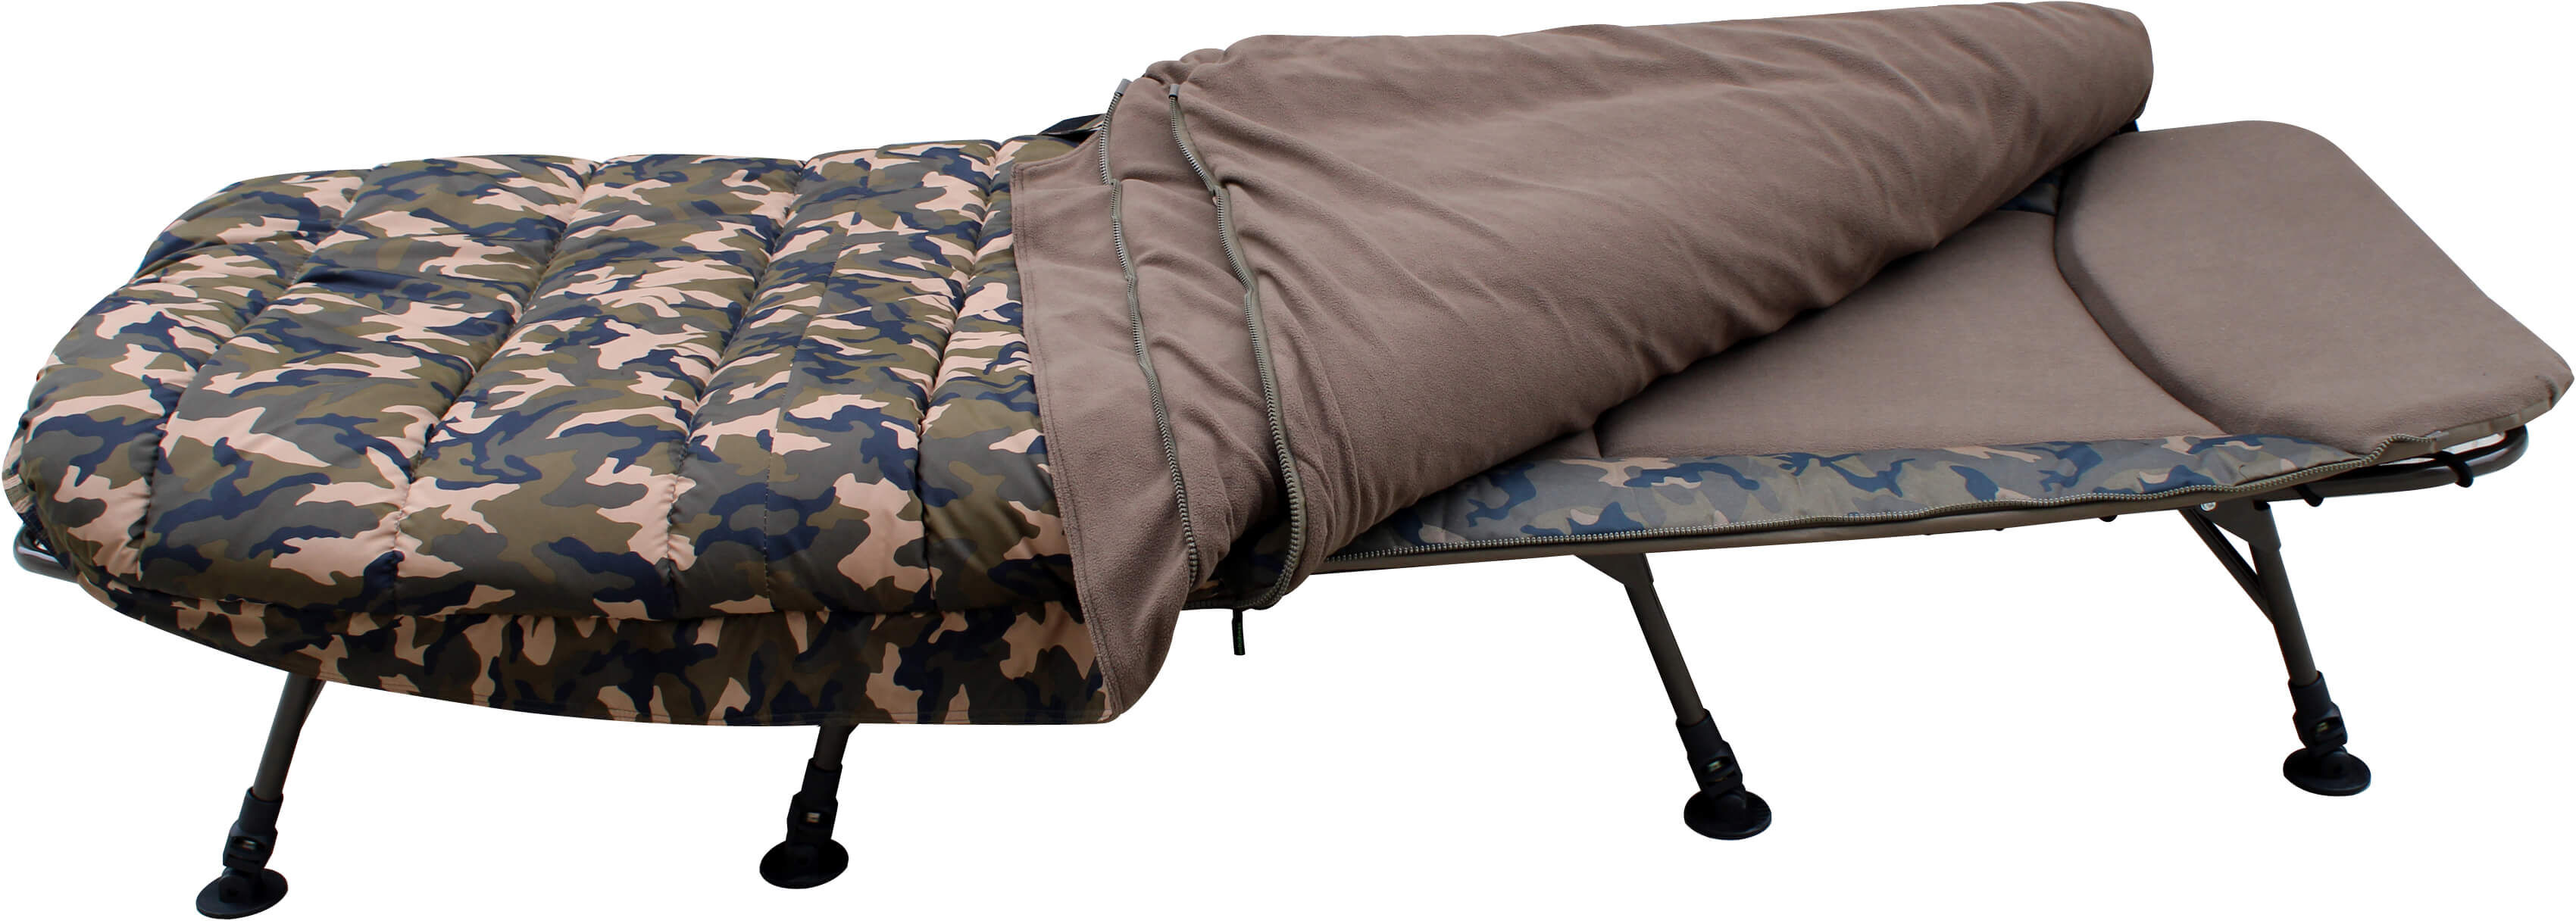 Das 8 Bein Bedchair besitzt ein 2 lagigen Schlafsack, welcher variabel eingesetzt werden kann.